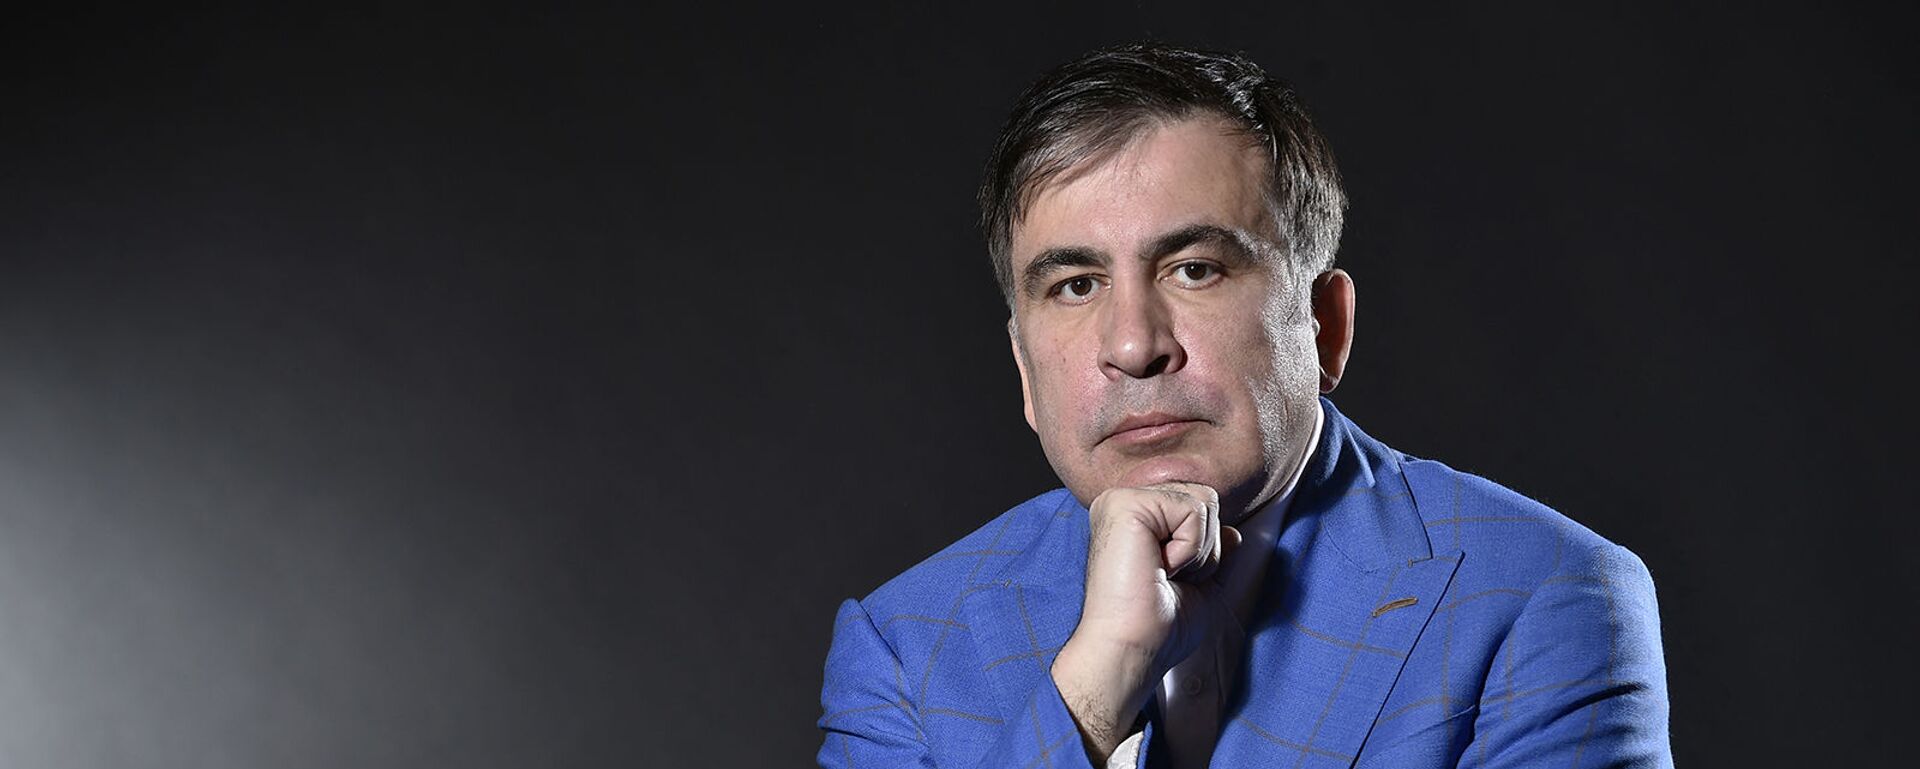 Бывший президент Грузии Михаил Саакашвили во время фотосессии (7 марта 2018). Амстердам - Sputnik Армения, 1920, 16.09.2021